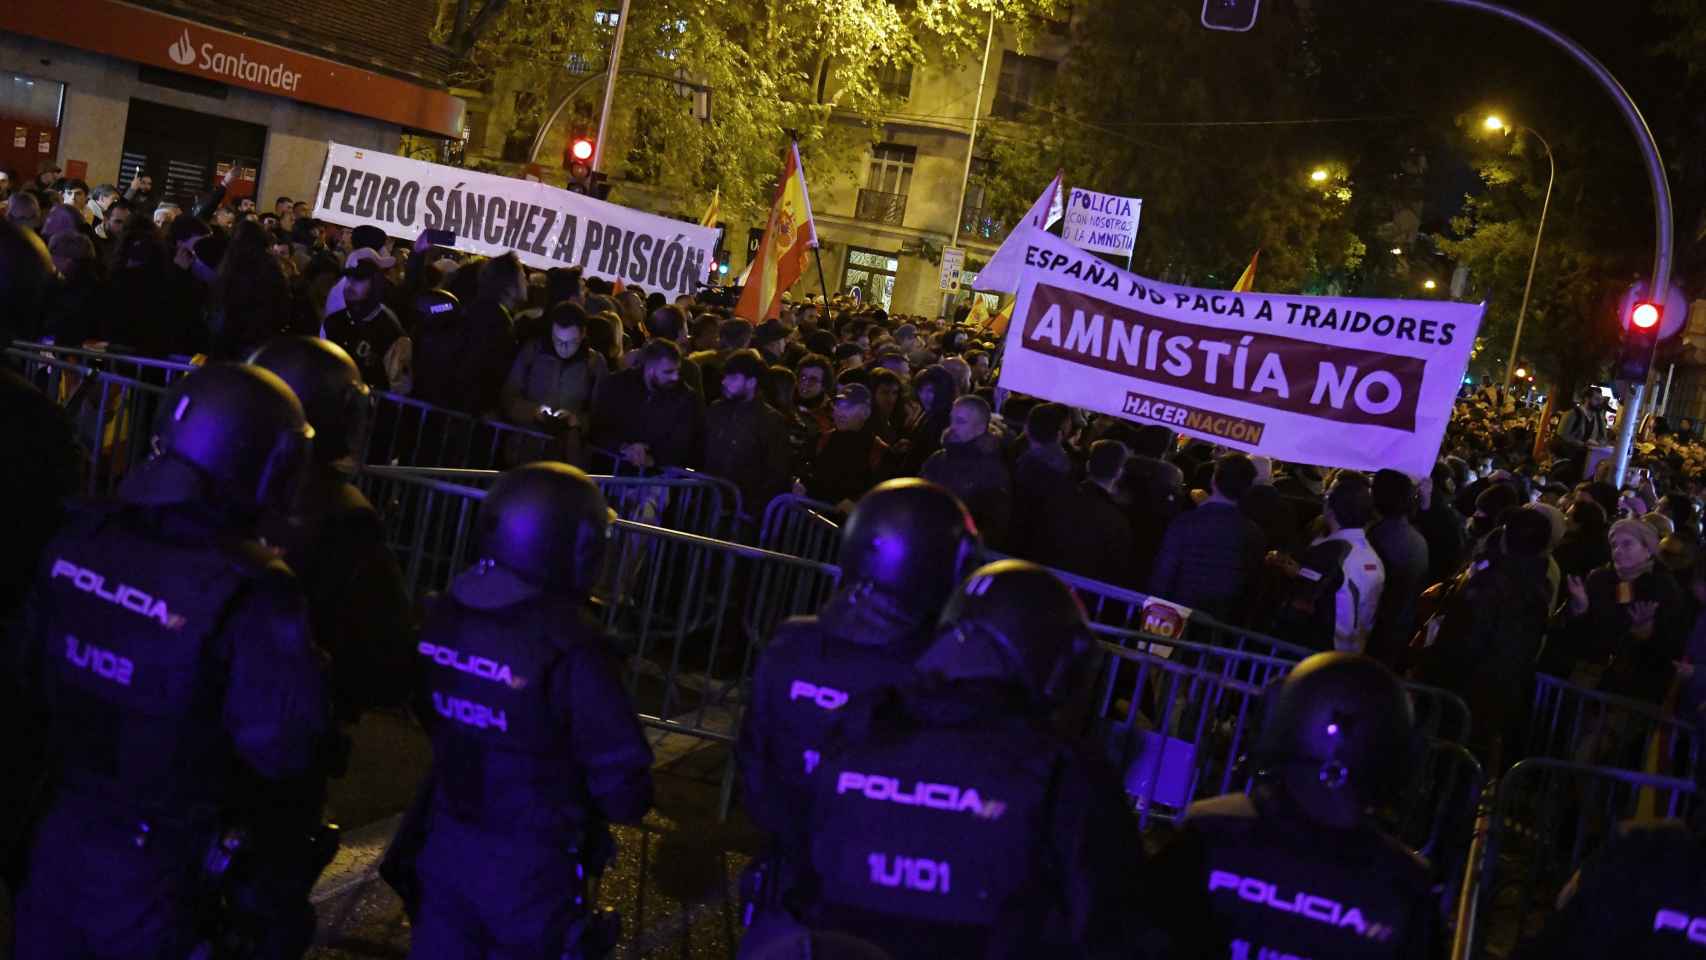 Imagen de la concentración contra el Gobierno central y la amnistía en Madrid / Fernando Sánchez - Europa Press